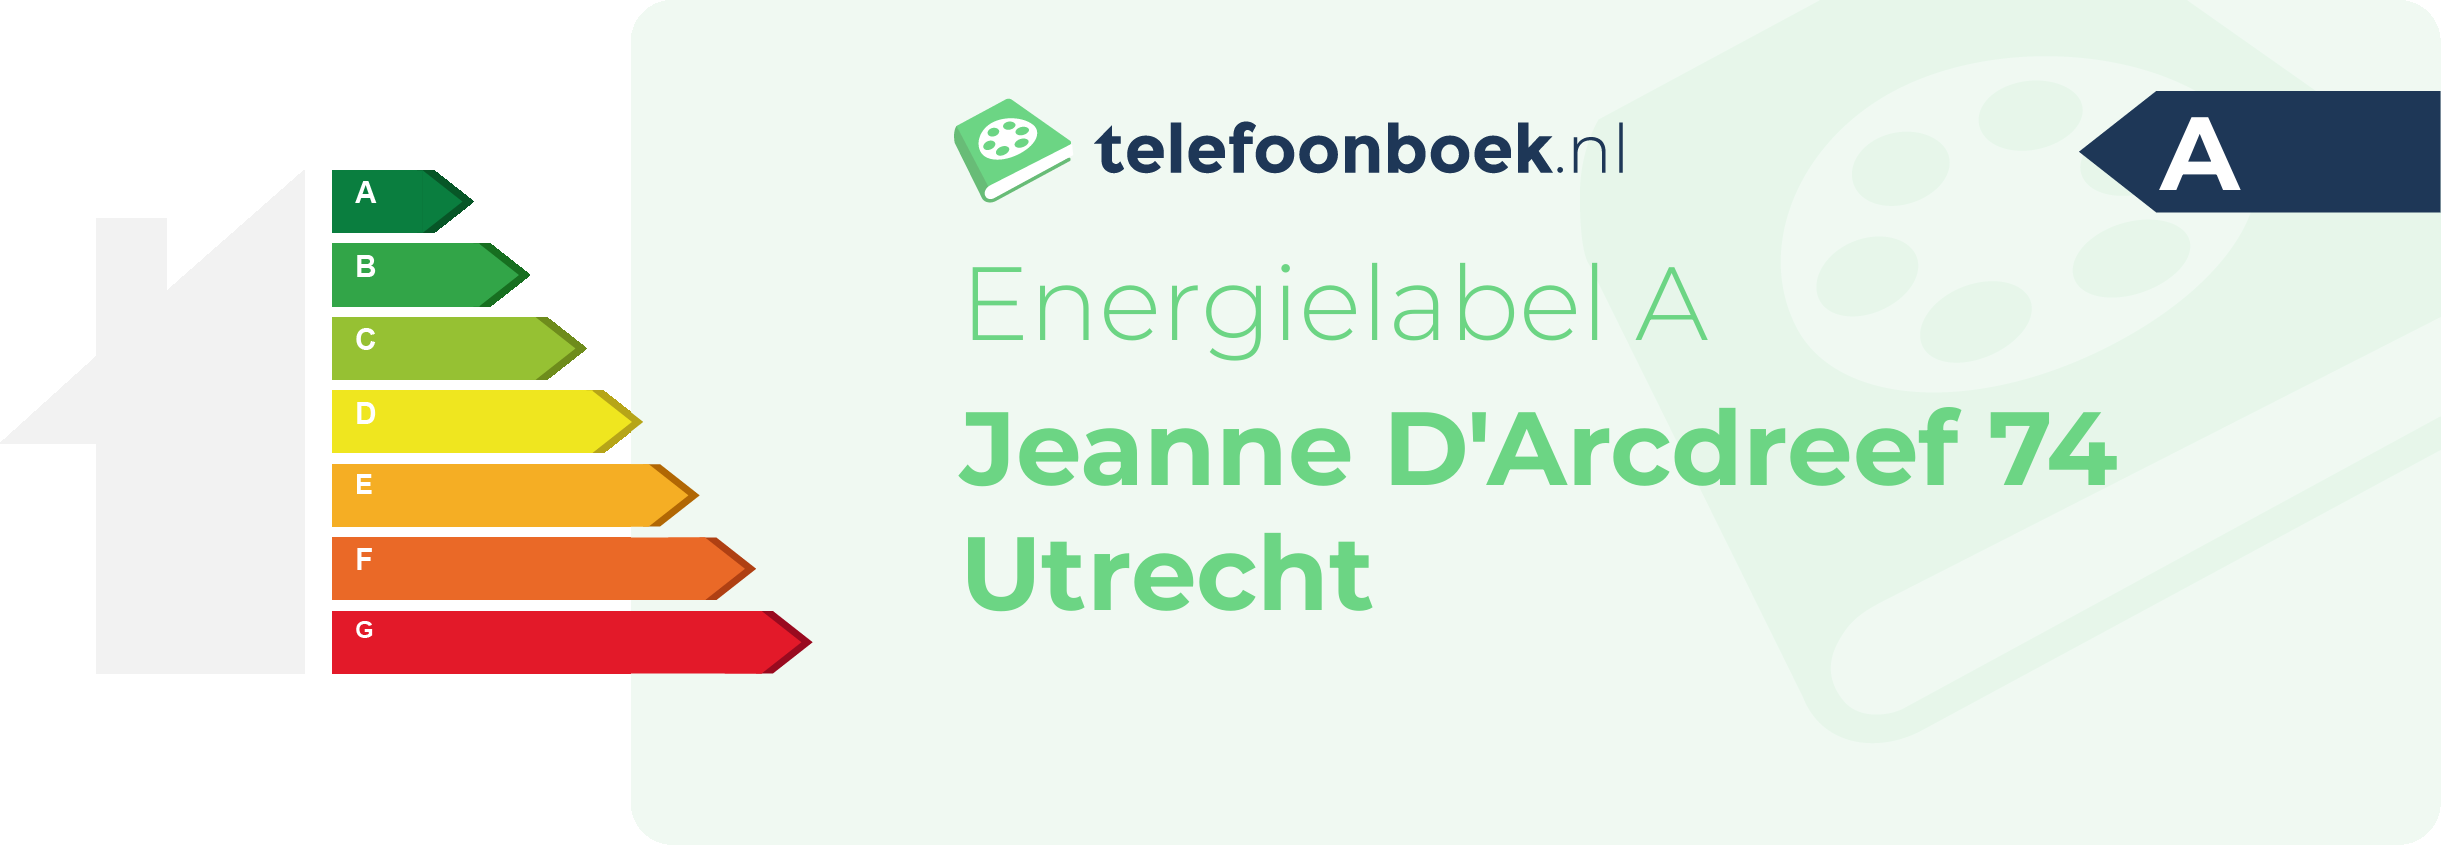 Energielabel Jeanne D'Arcdreef 74 Utrecht